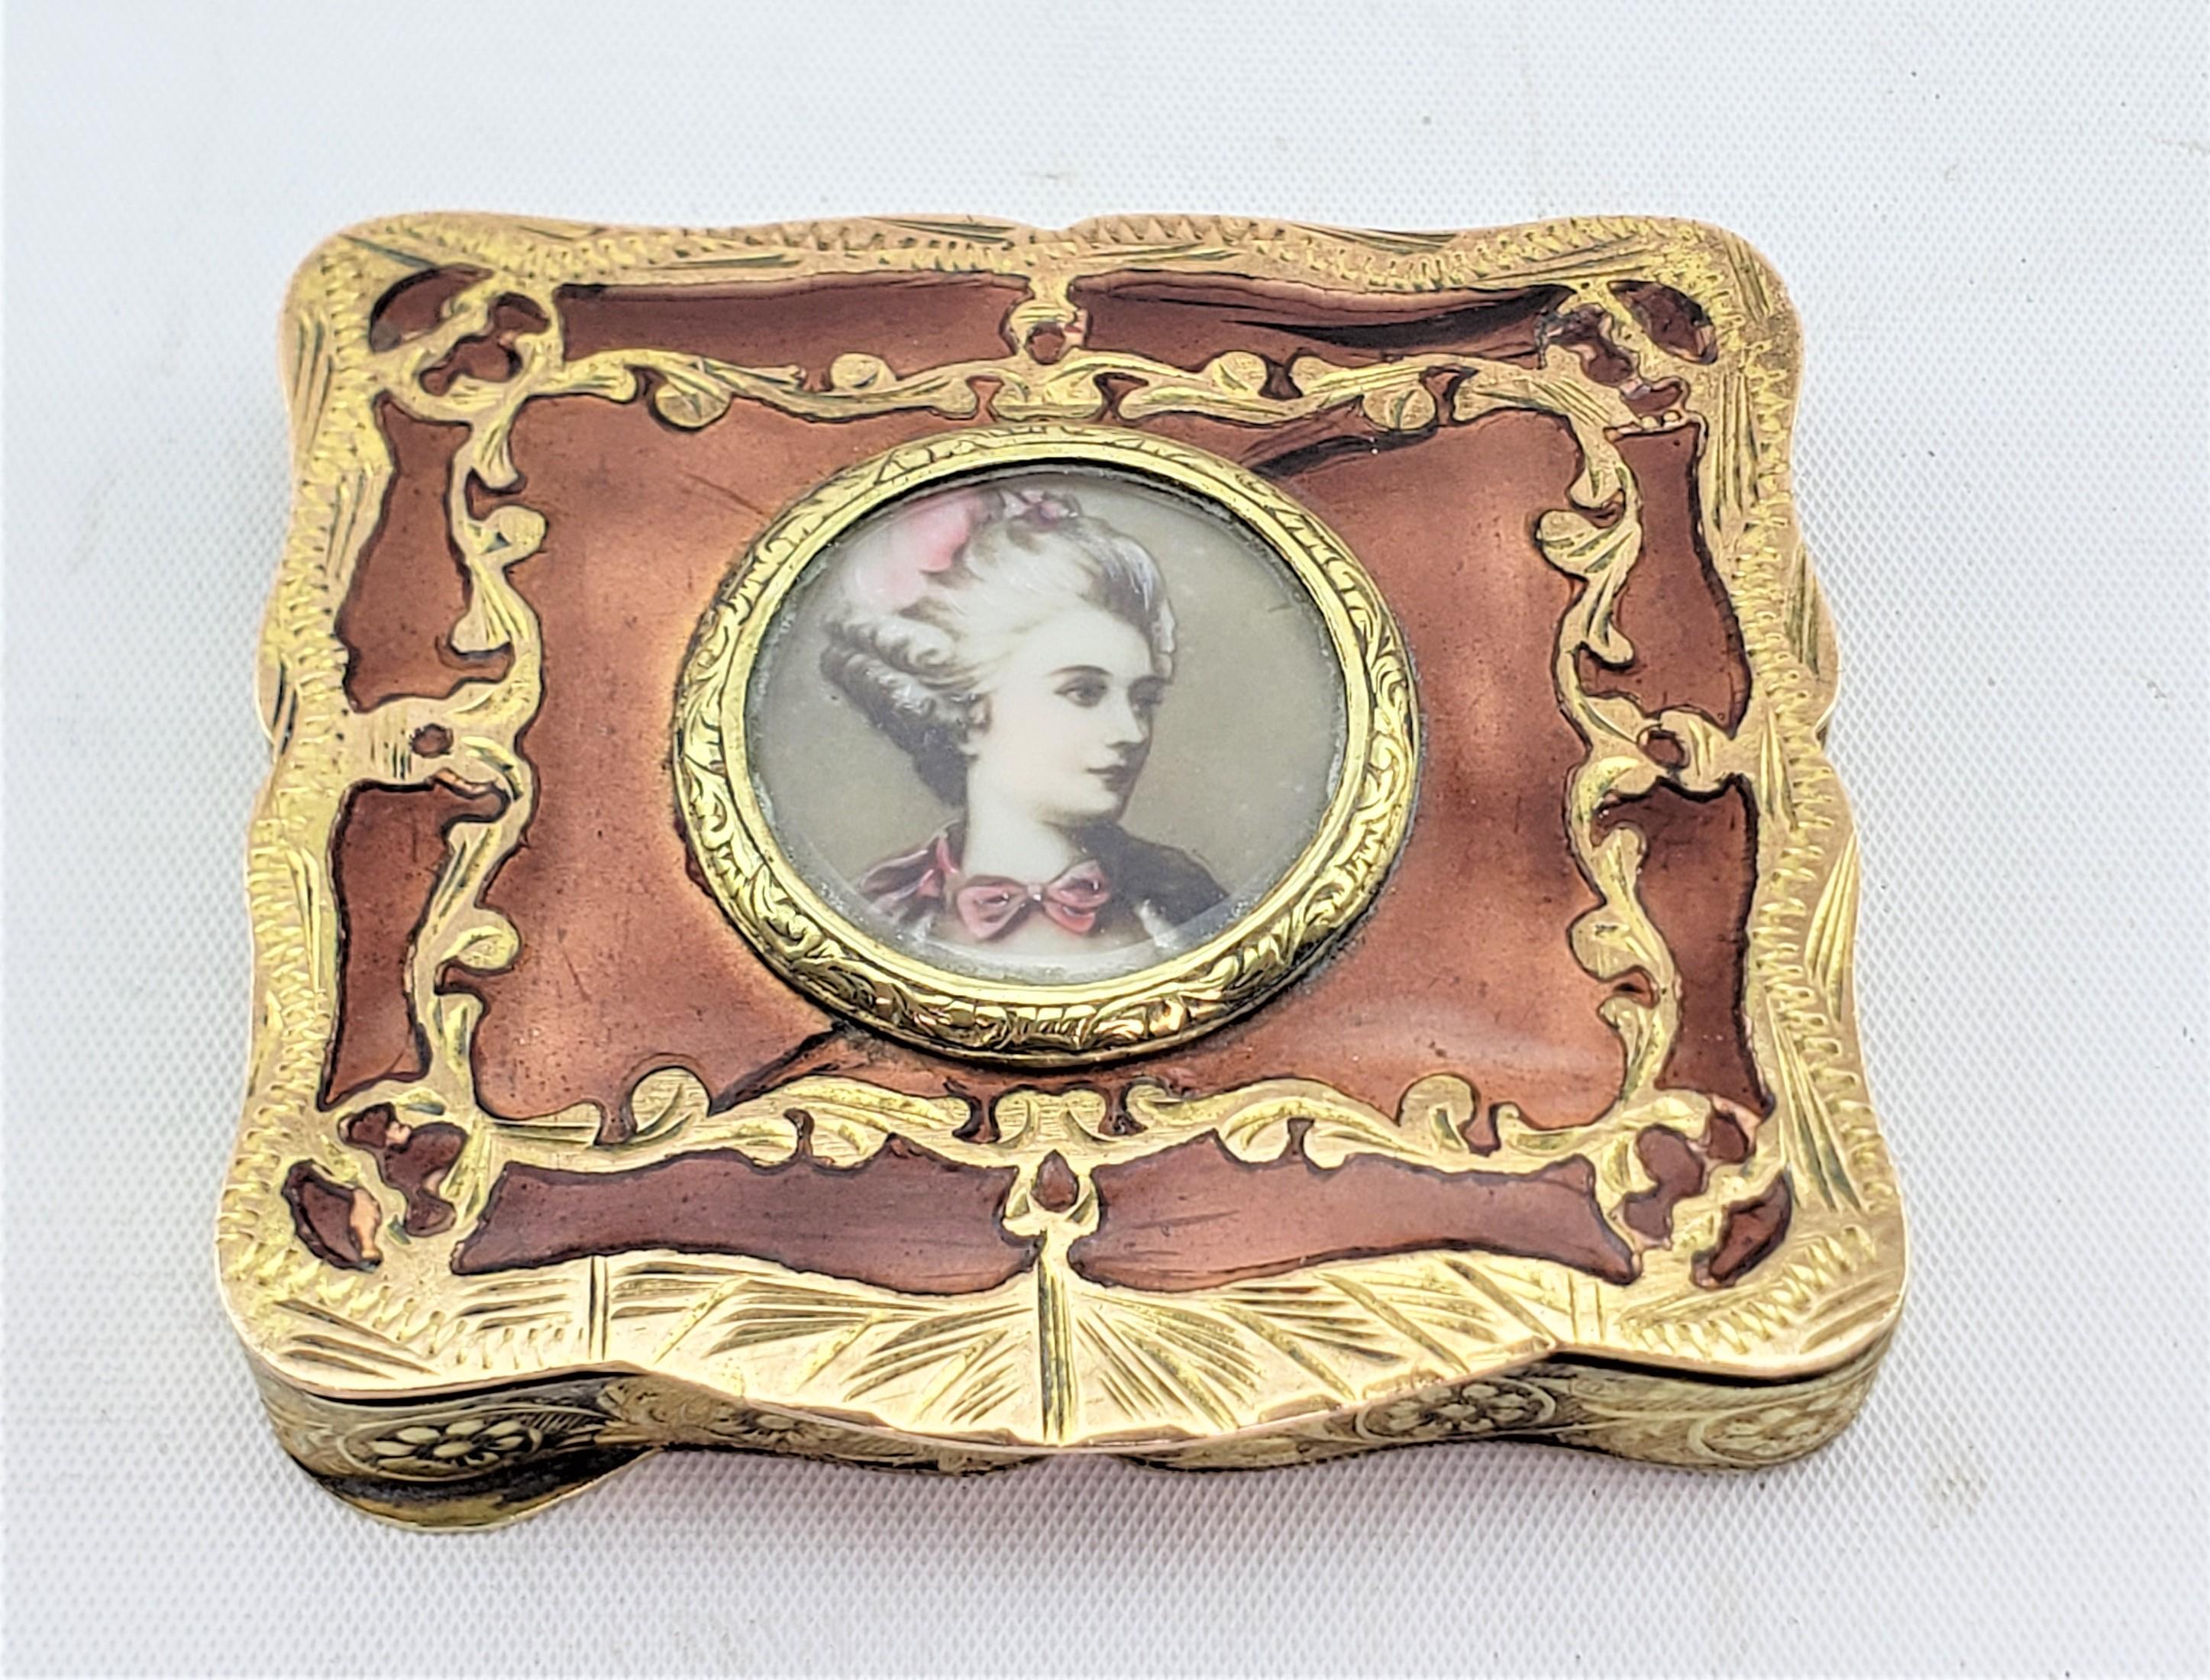 Renaissance Revival Antique Gilt Copper & Enamel Ladies Compac with Hand Painted Portrait For Sale